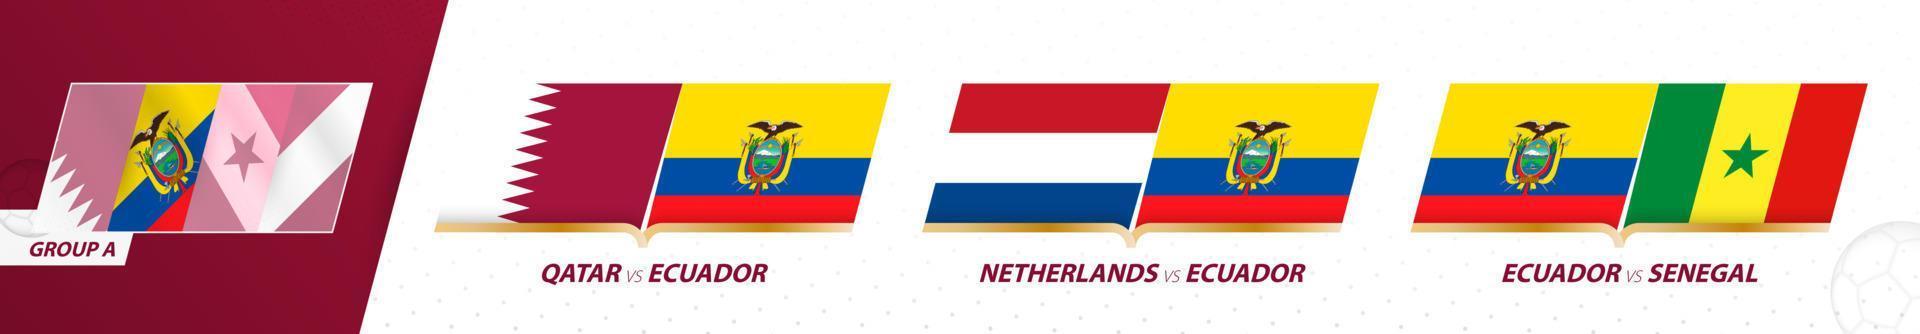 Ecuador-Fußballmannschaftsspiele in Gruppe A des internationalen Fußballturniers 2022. vektor